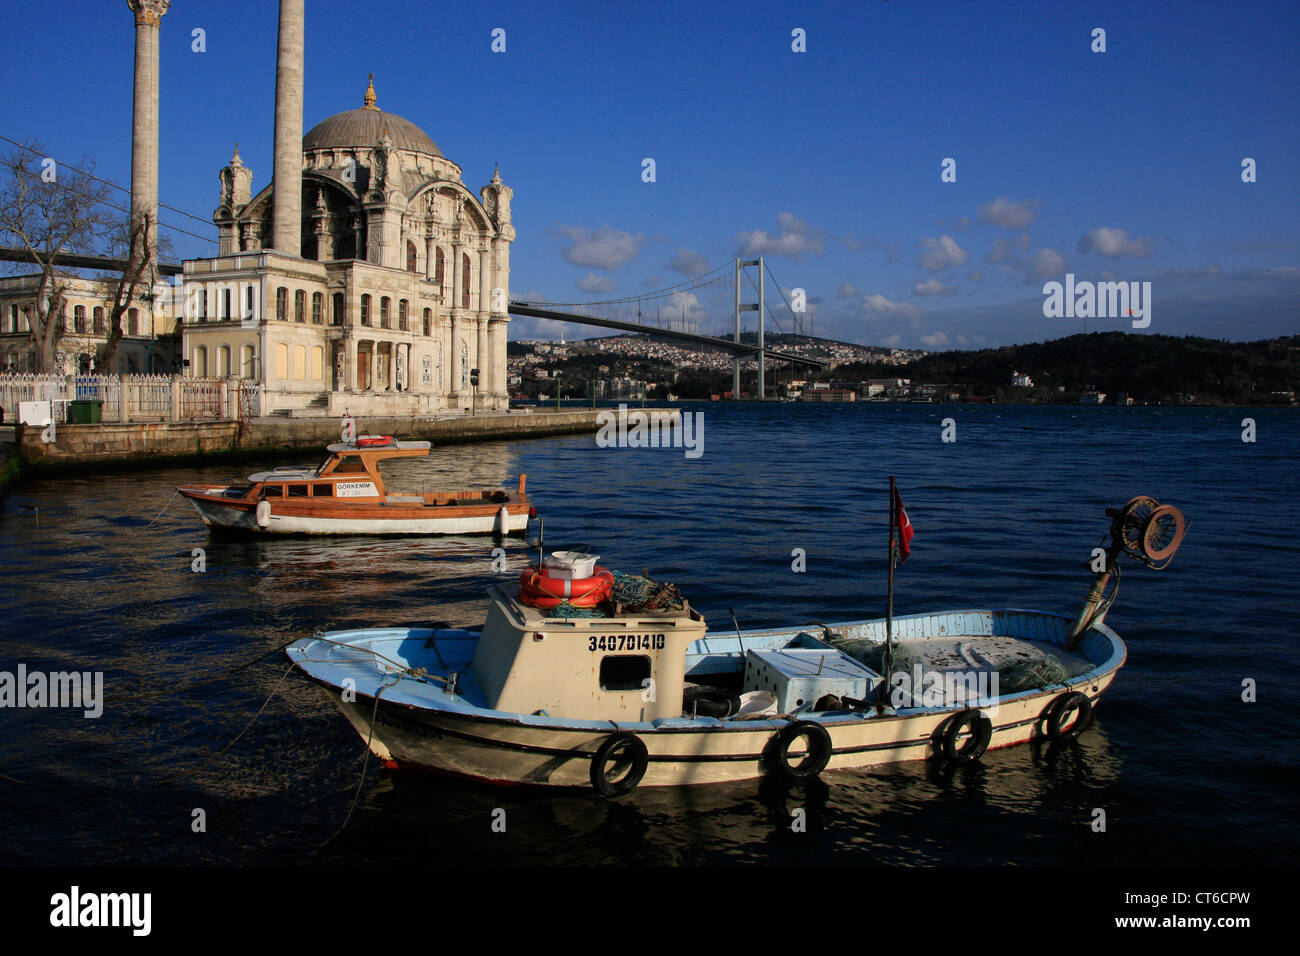 La Moschea Ortakoy e il Ponte sul Bosforo, Besiktas, Istanbul, Turchia Foto Stock